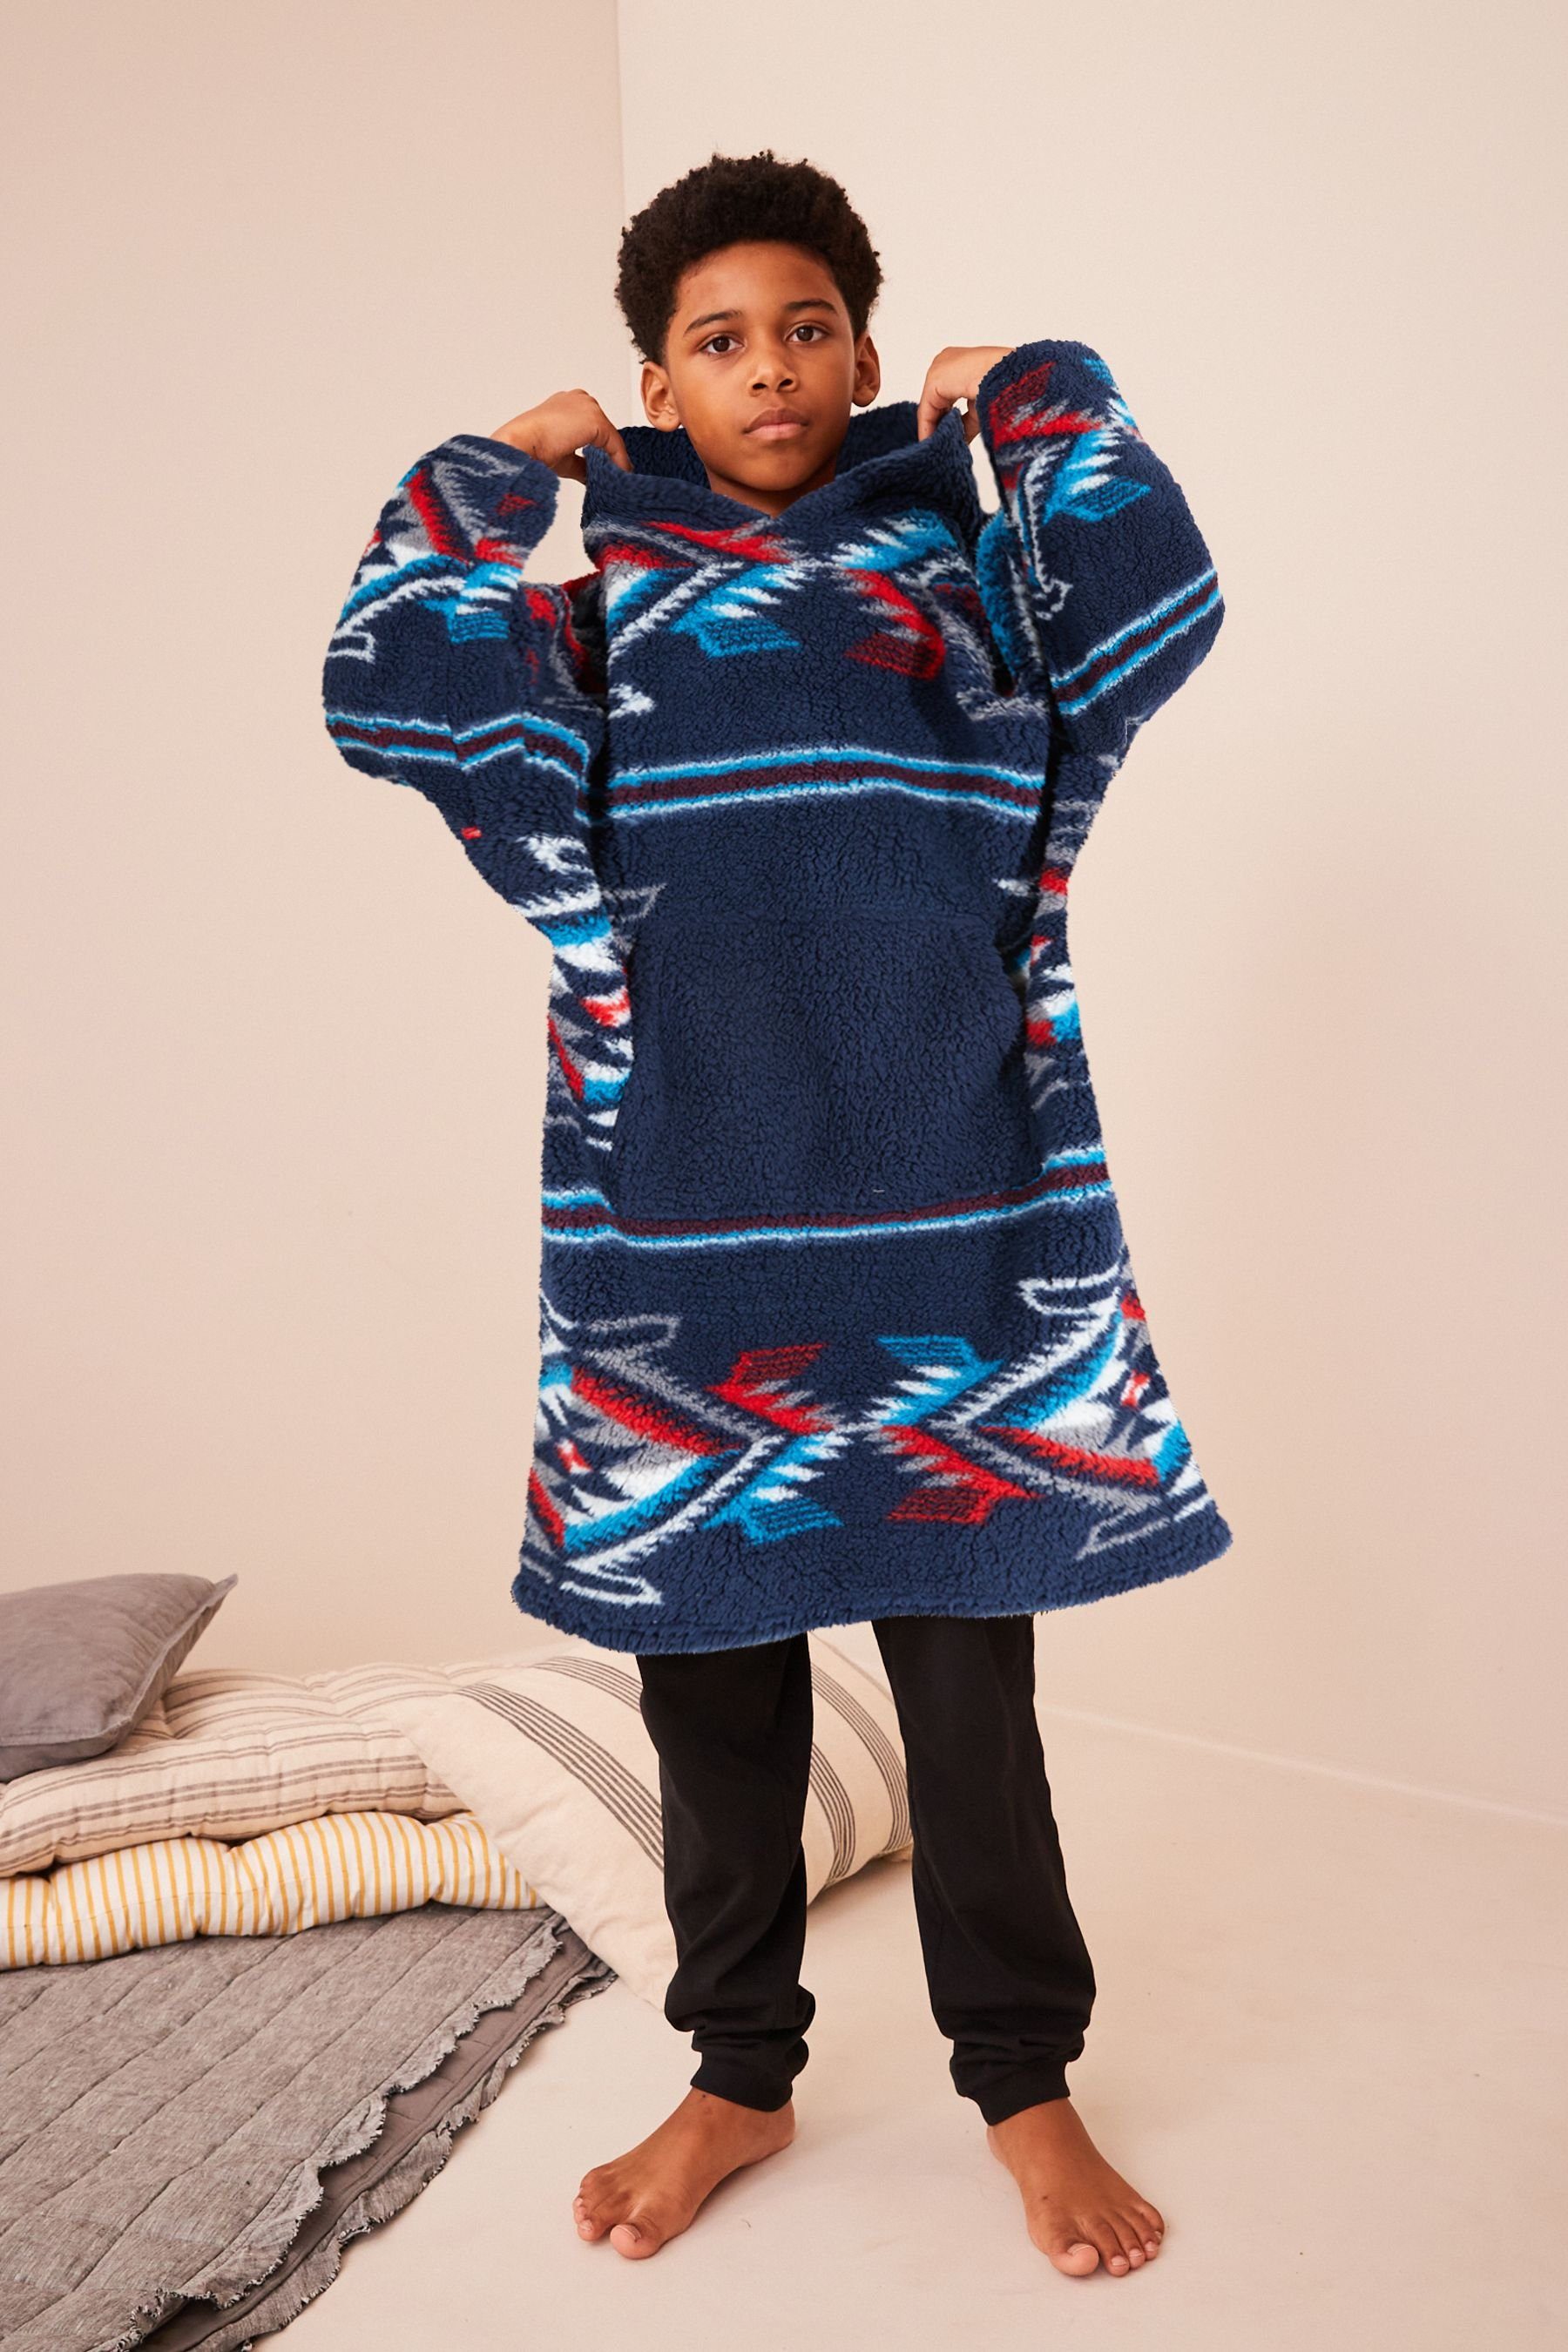 Next Kapuze, Blue mit Print Aztec Polyester Decke Kinderbademantel Navy